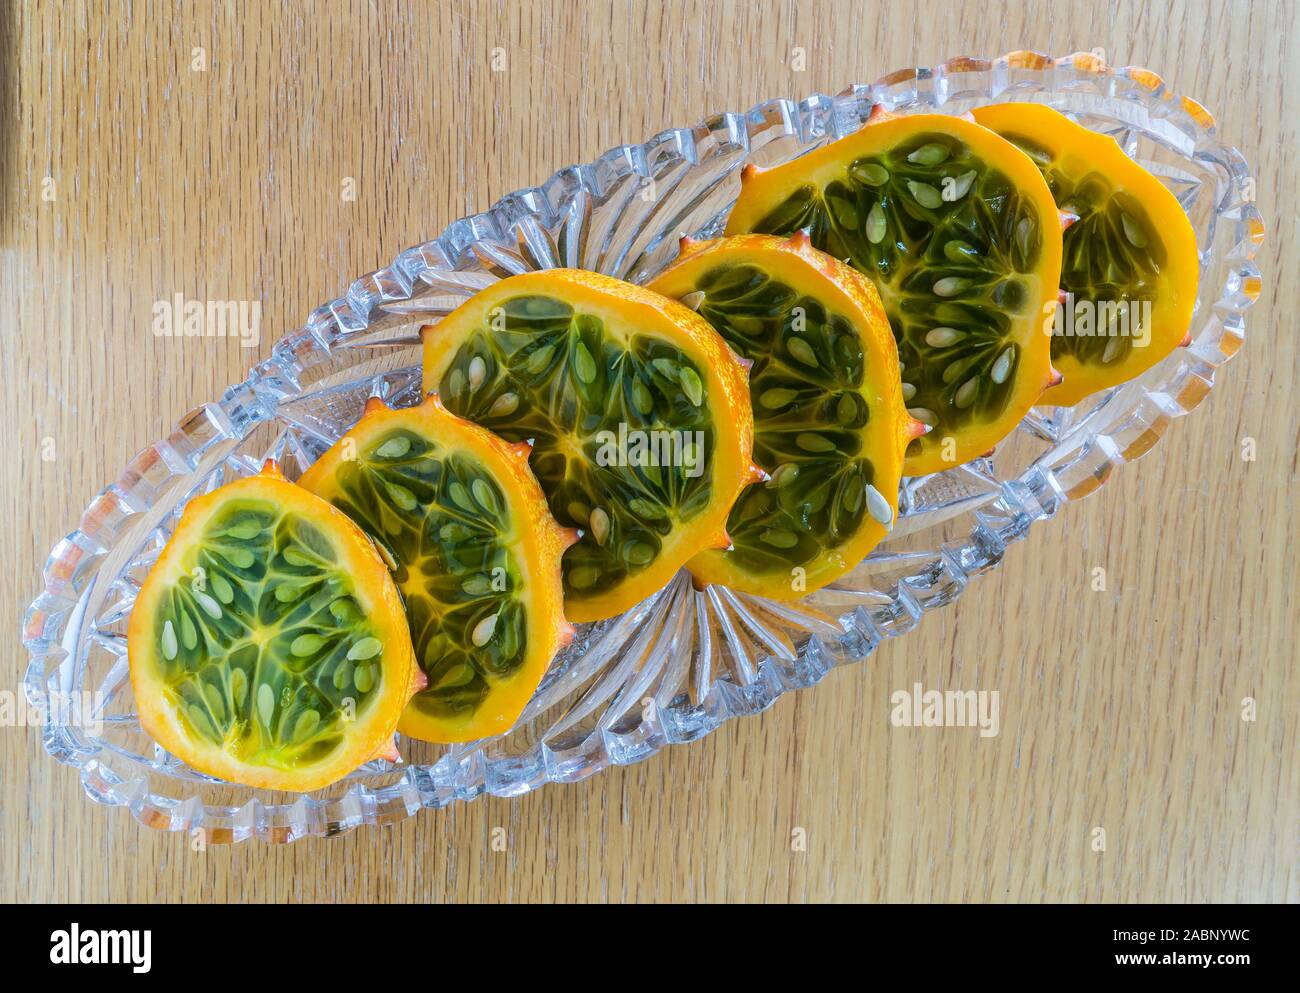 Tranches de melon kiwano dans du verre plat de service Banque D'Images